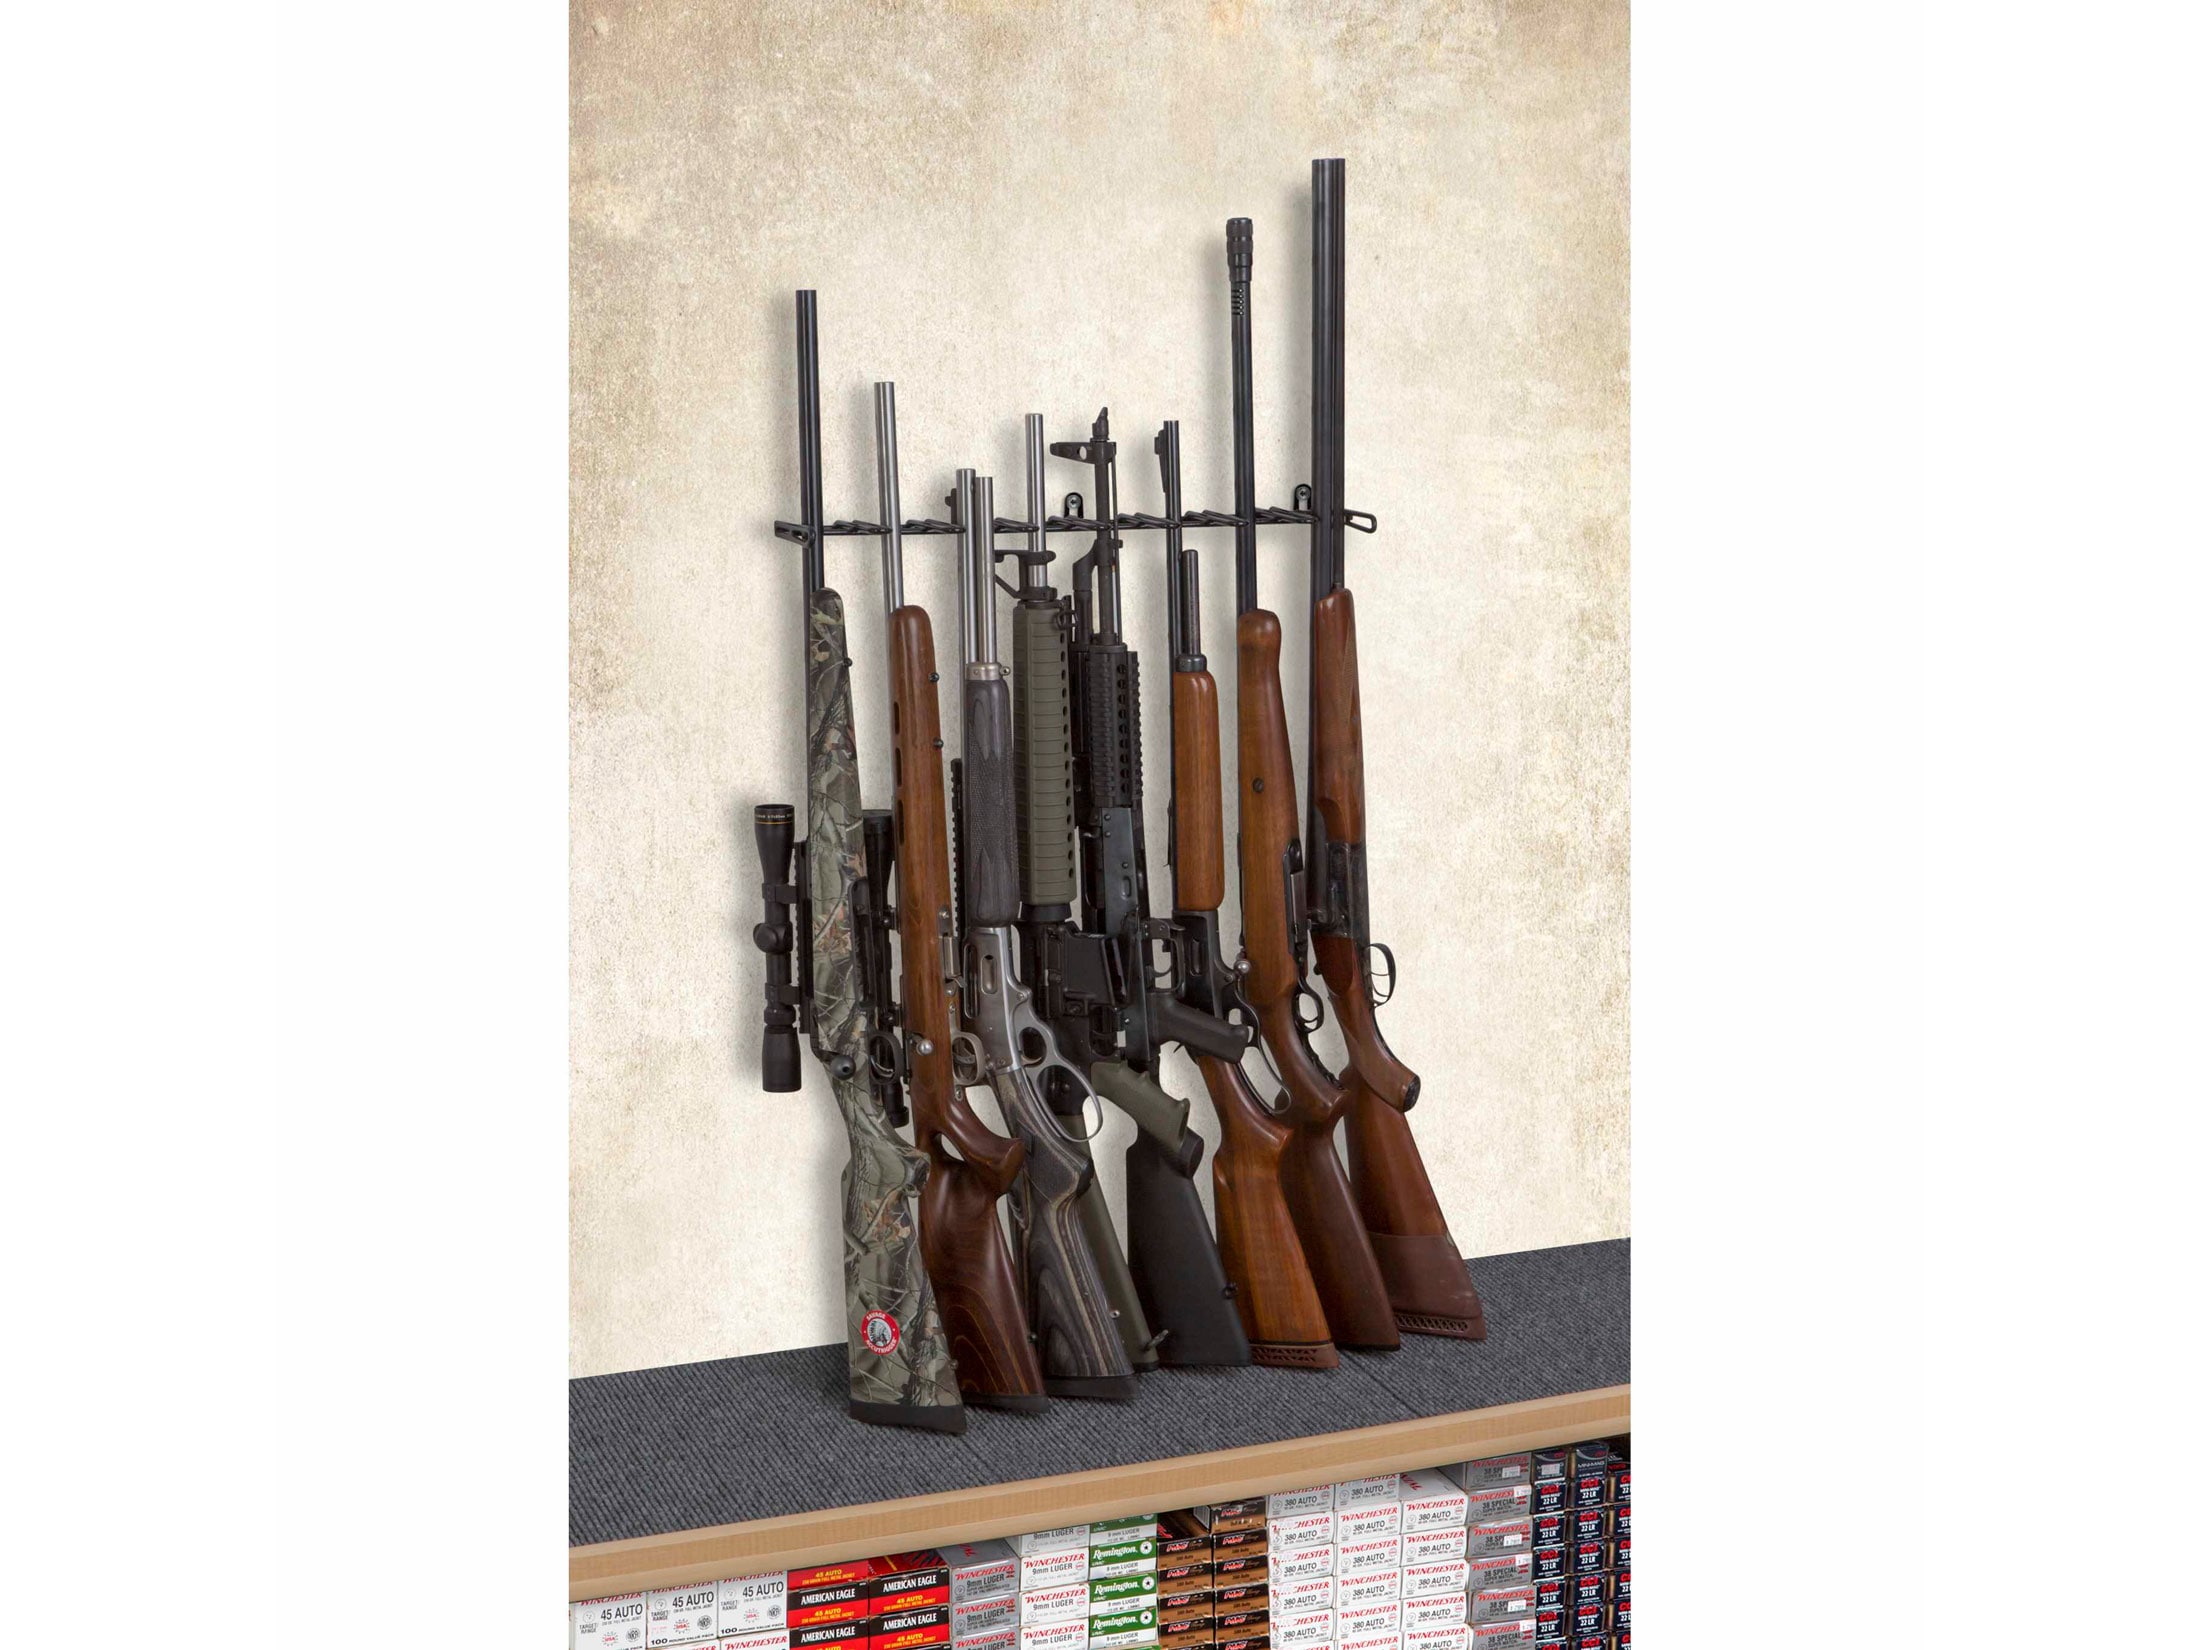 Details about   Gun Safe Storage Barrel Rest Rack Holder Organizer Accessories Shelf 